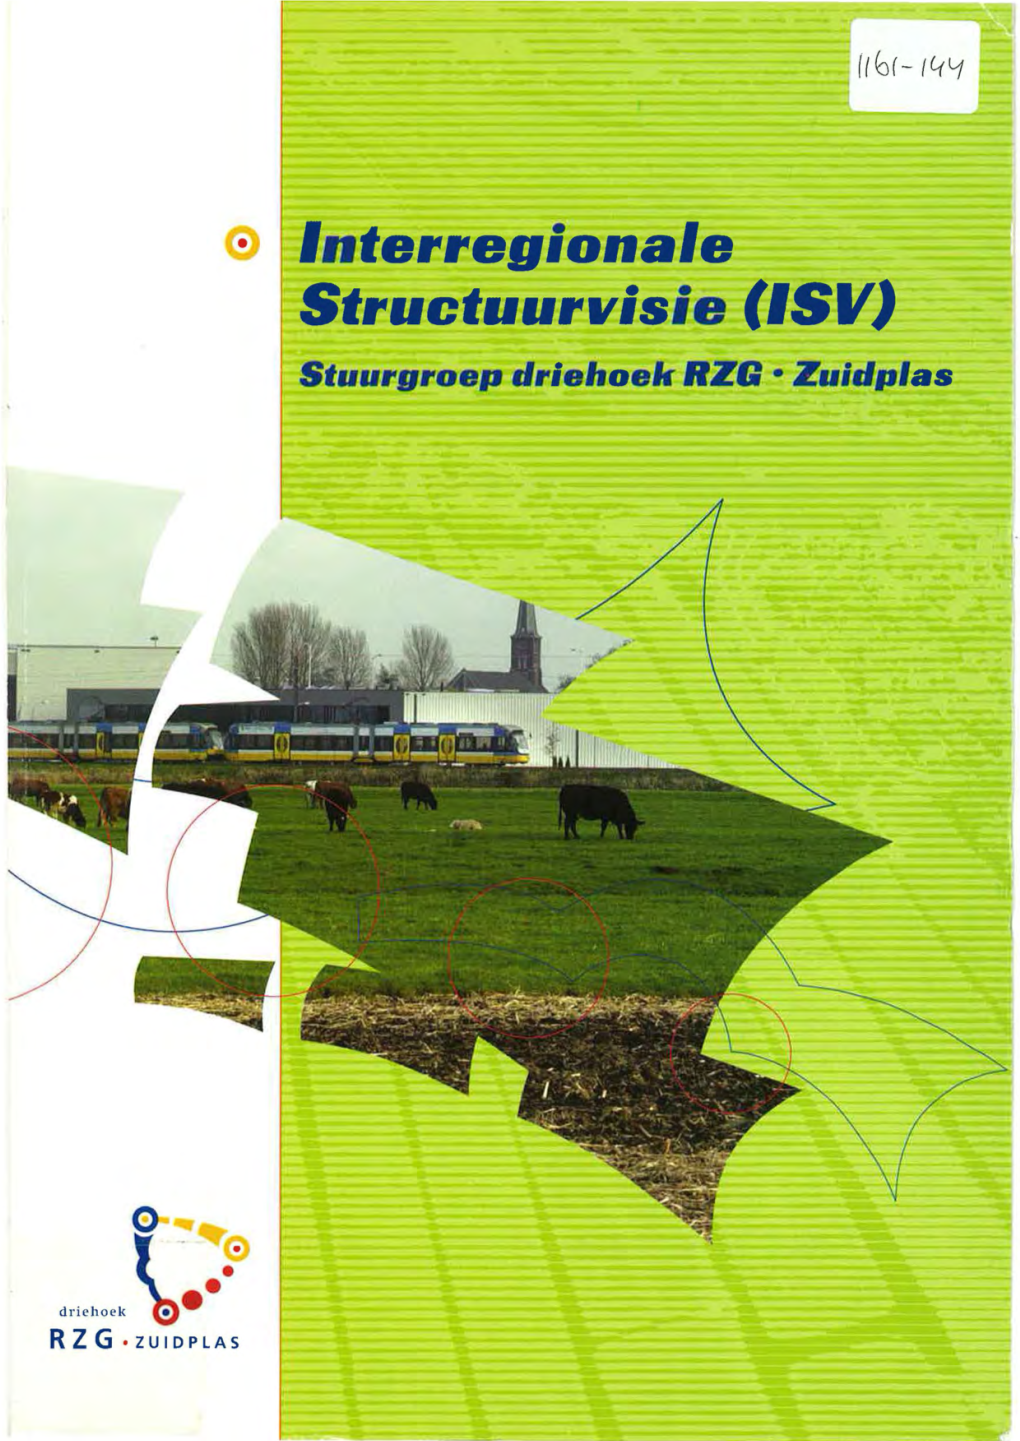 Interregionale Structuurvisie (ISV) Is Opgesteld Onder Verantwoordelijkheid Van De Stuurgroep Driehoek RZG